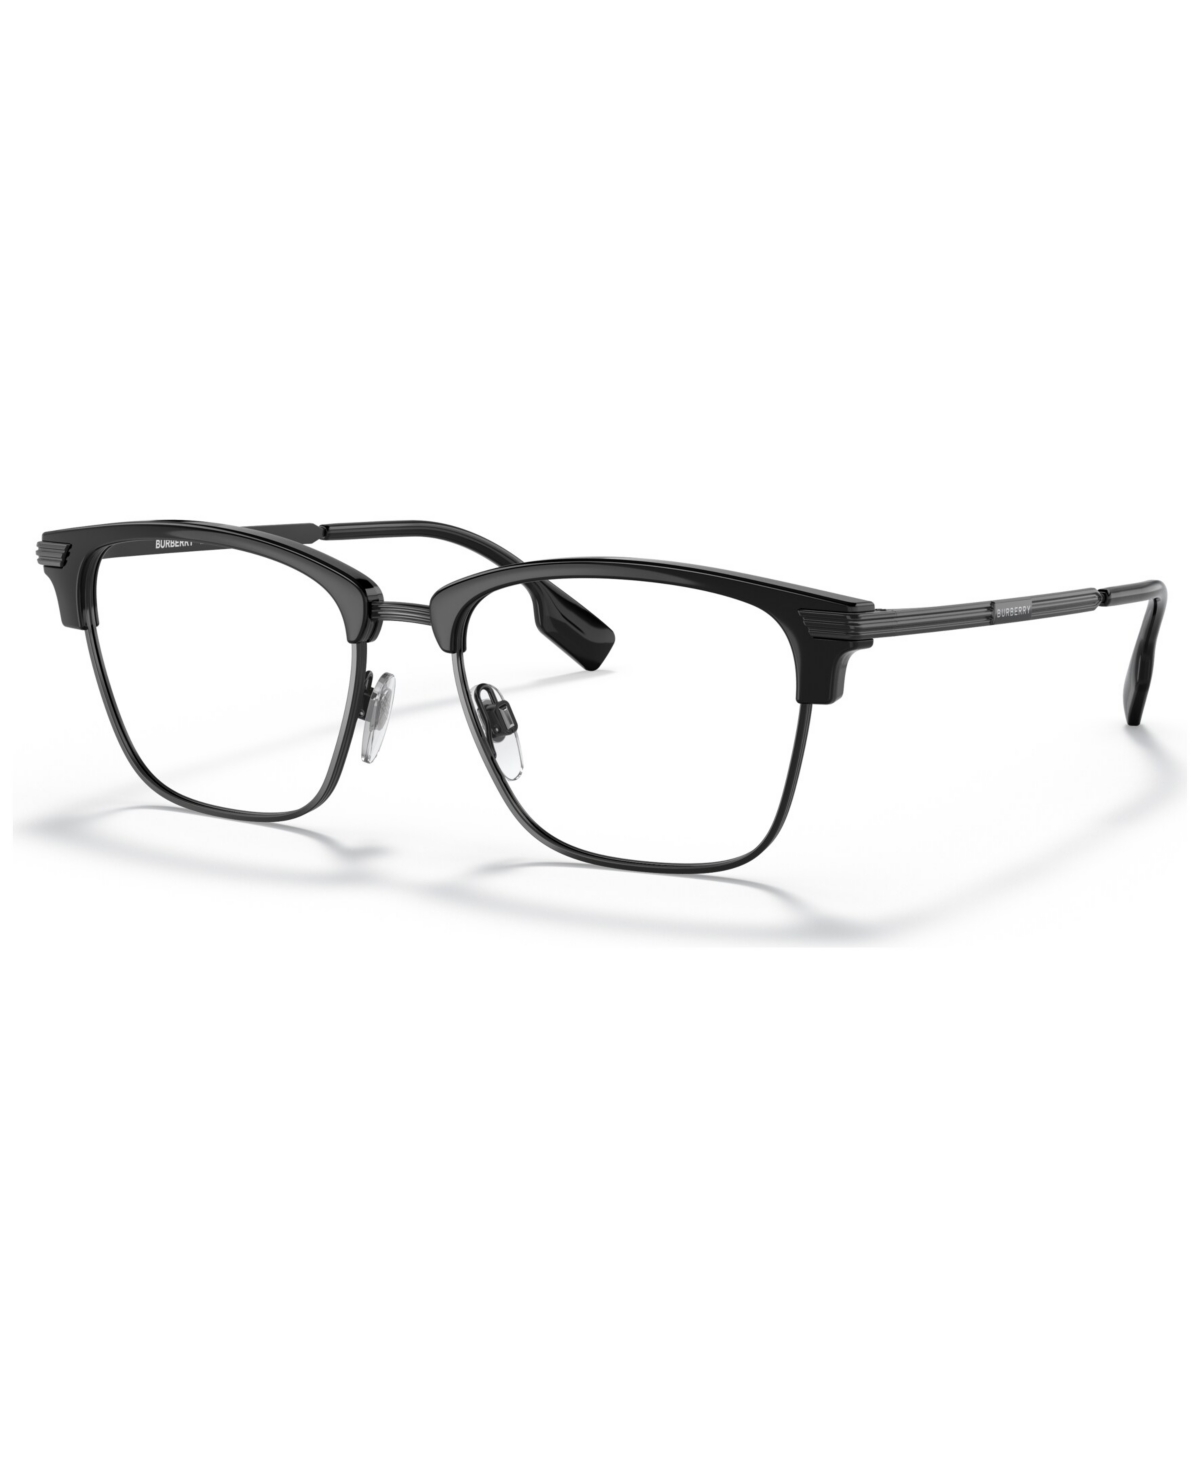 Men's Pearce Eyeglasses, BE2359 53 - Black